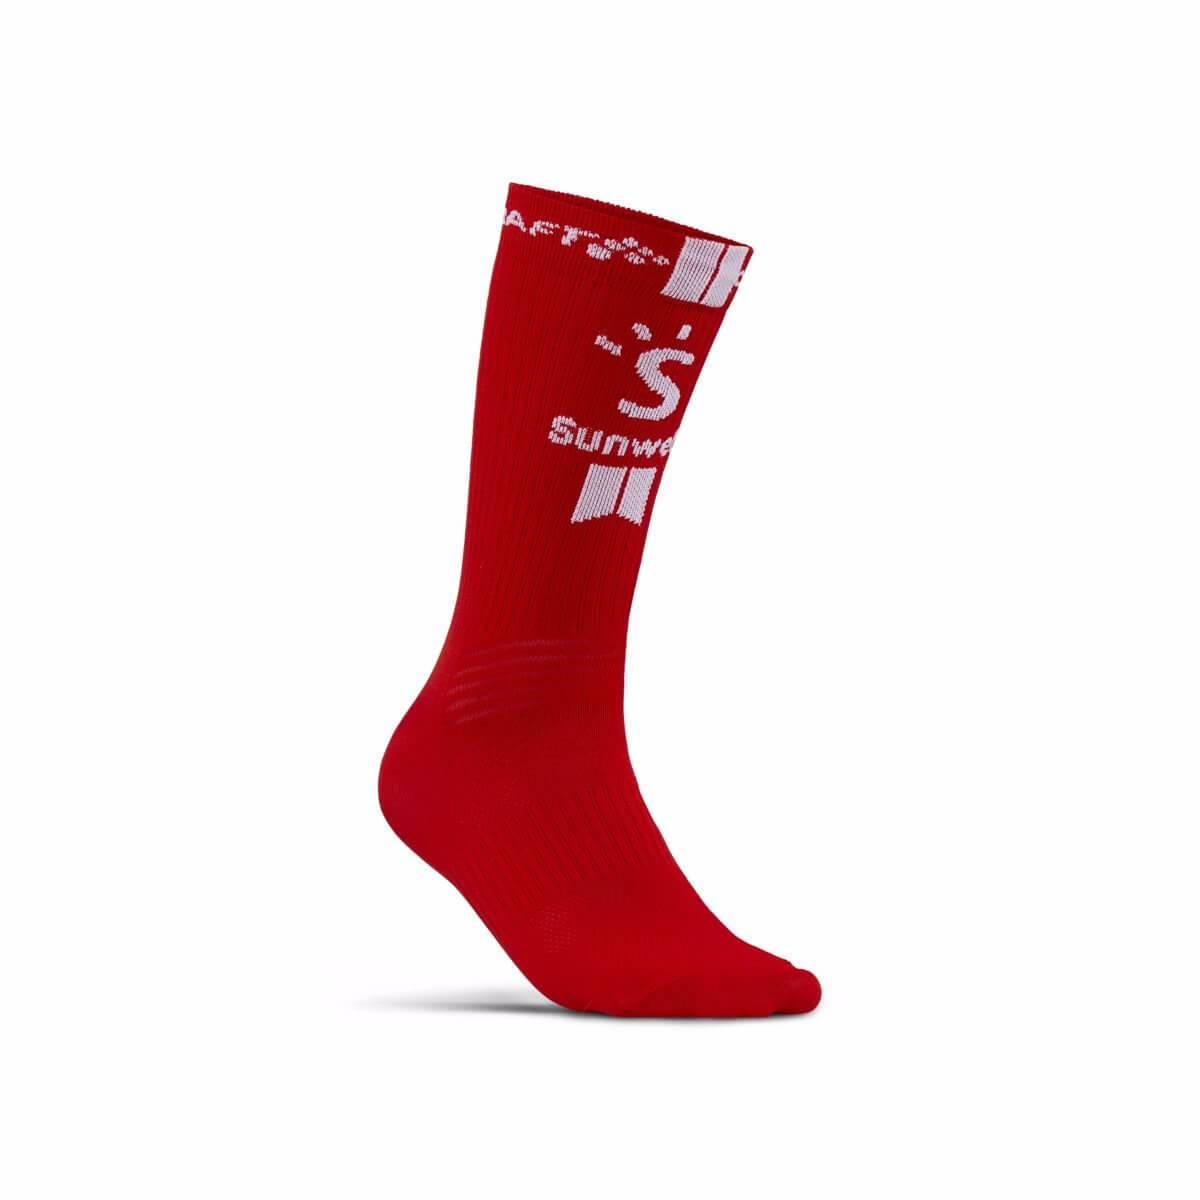 Unisex sporotvní ponožky Craft Ponožky Sunweb Bike červená